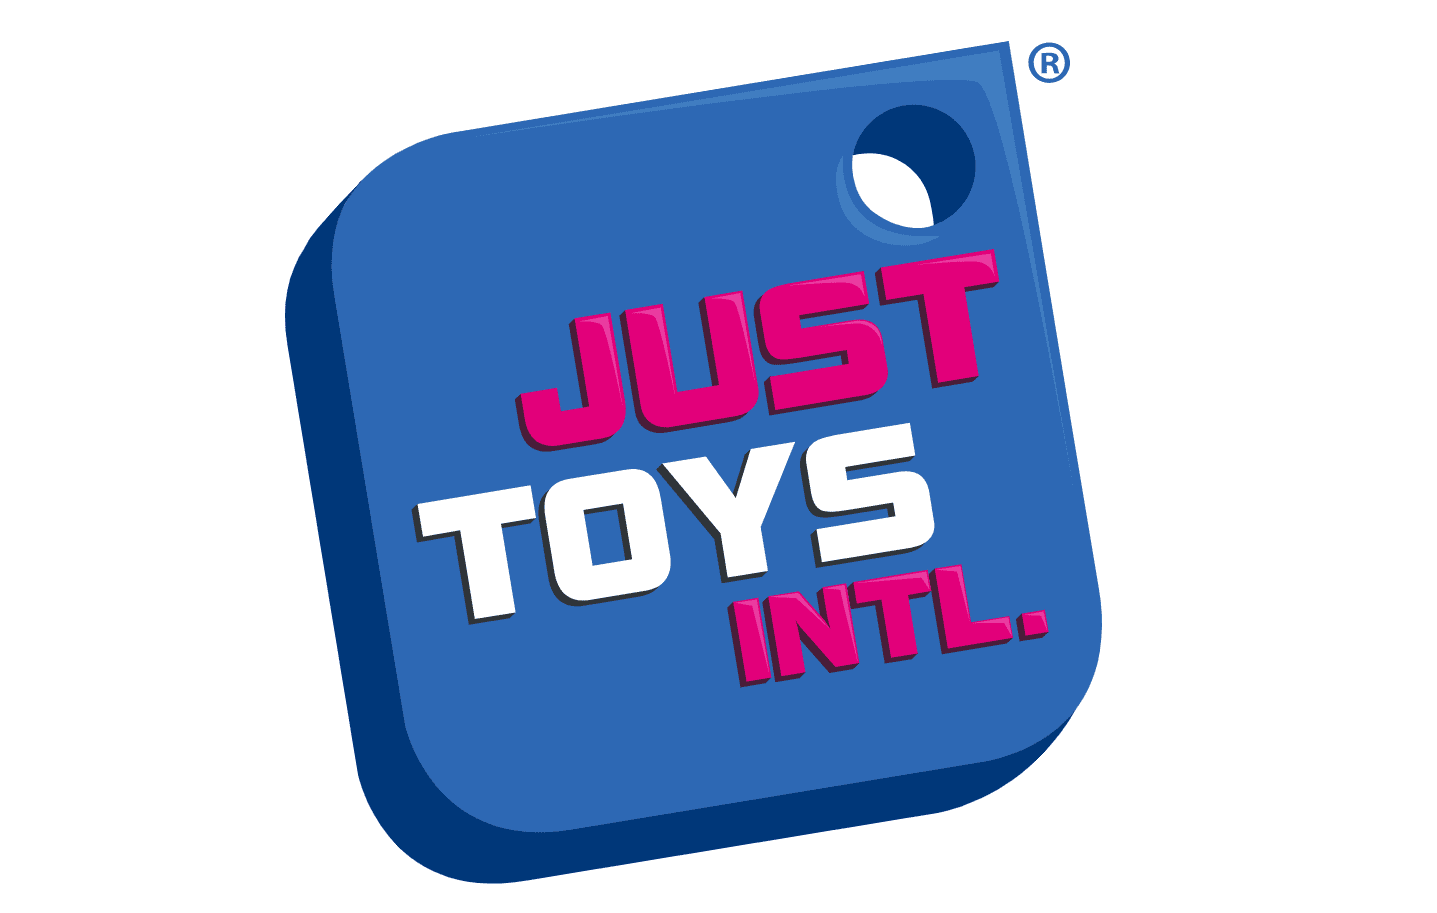 Just Toys Intl Logo